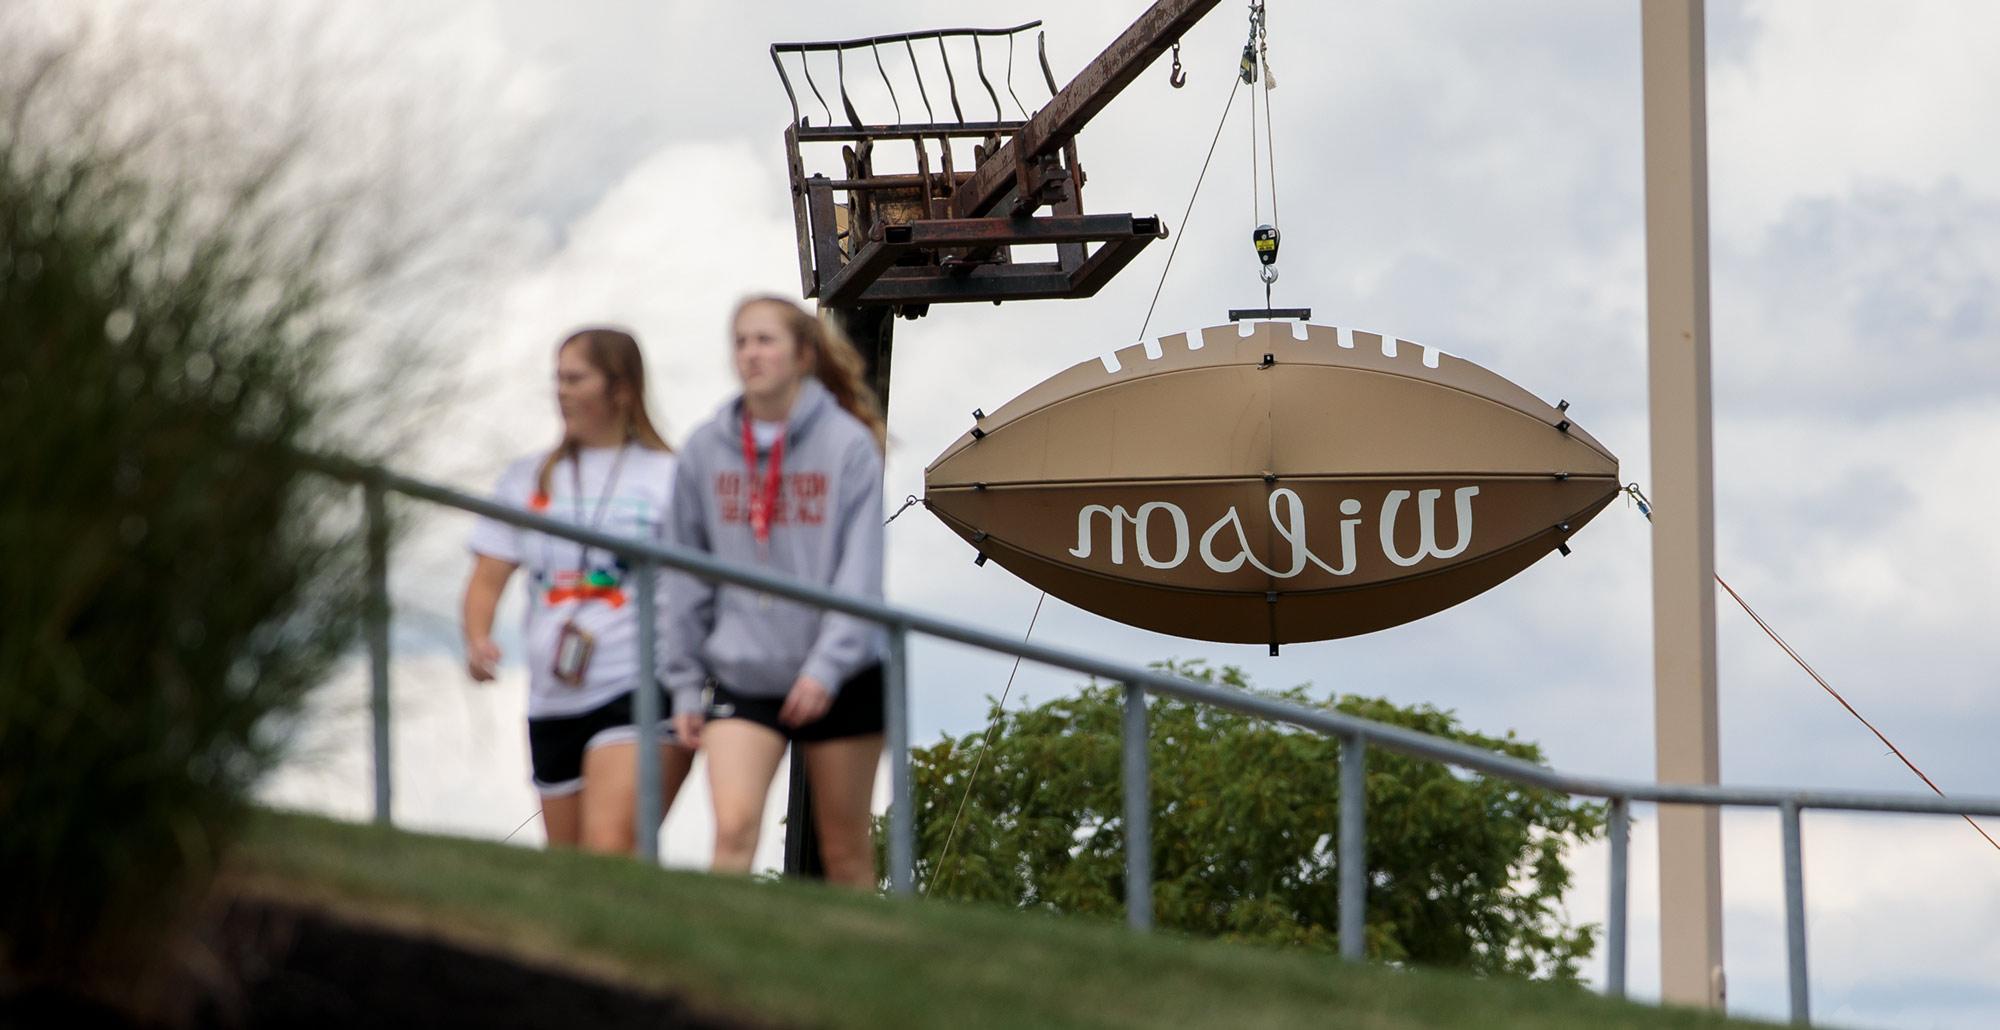 学生们走过俄亥俄州北部大学校园dial - robertson体育场外的巨型威尔逊足球.